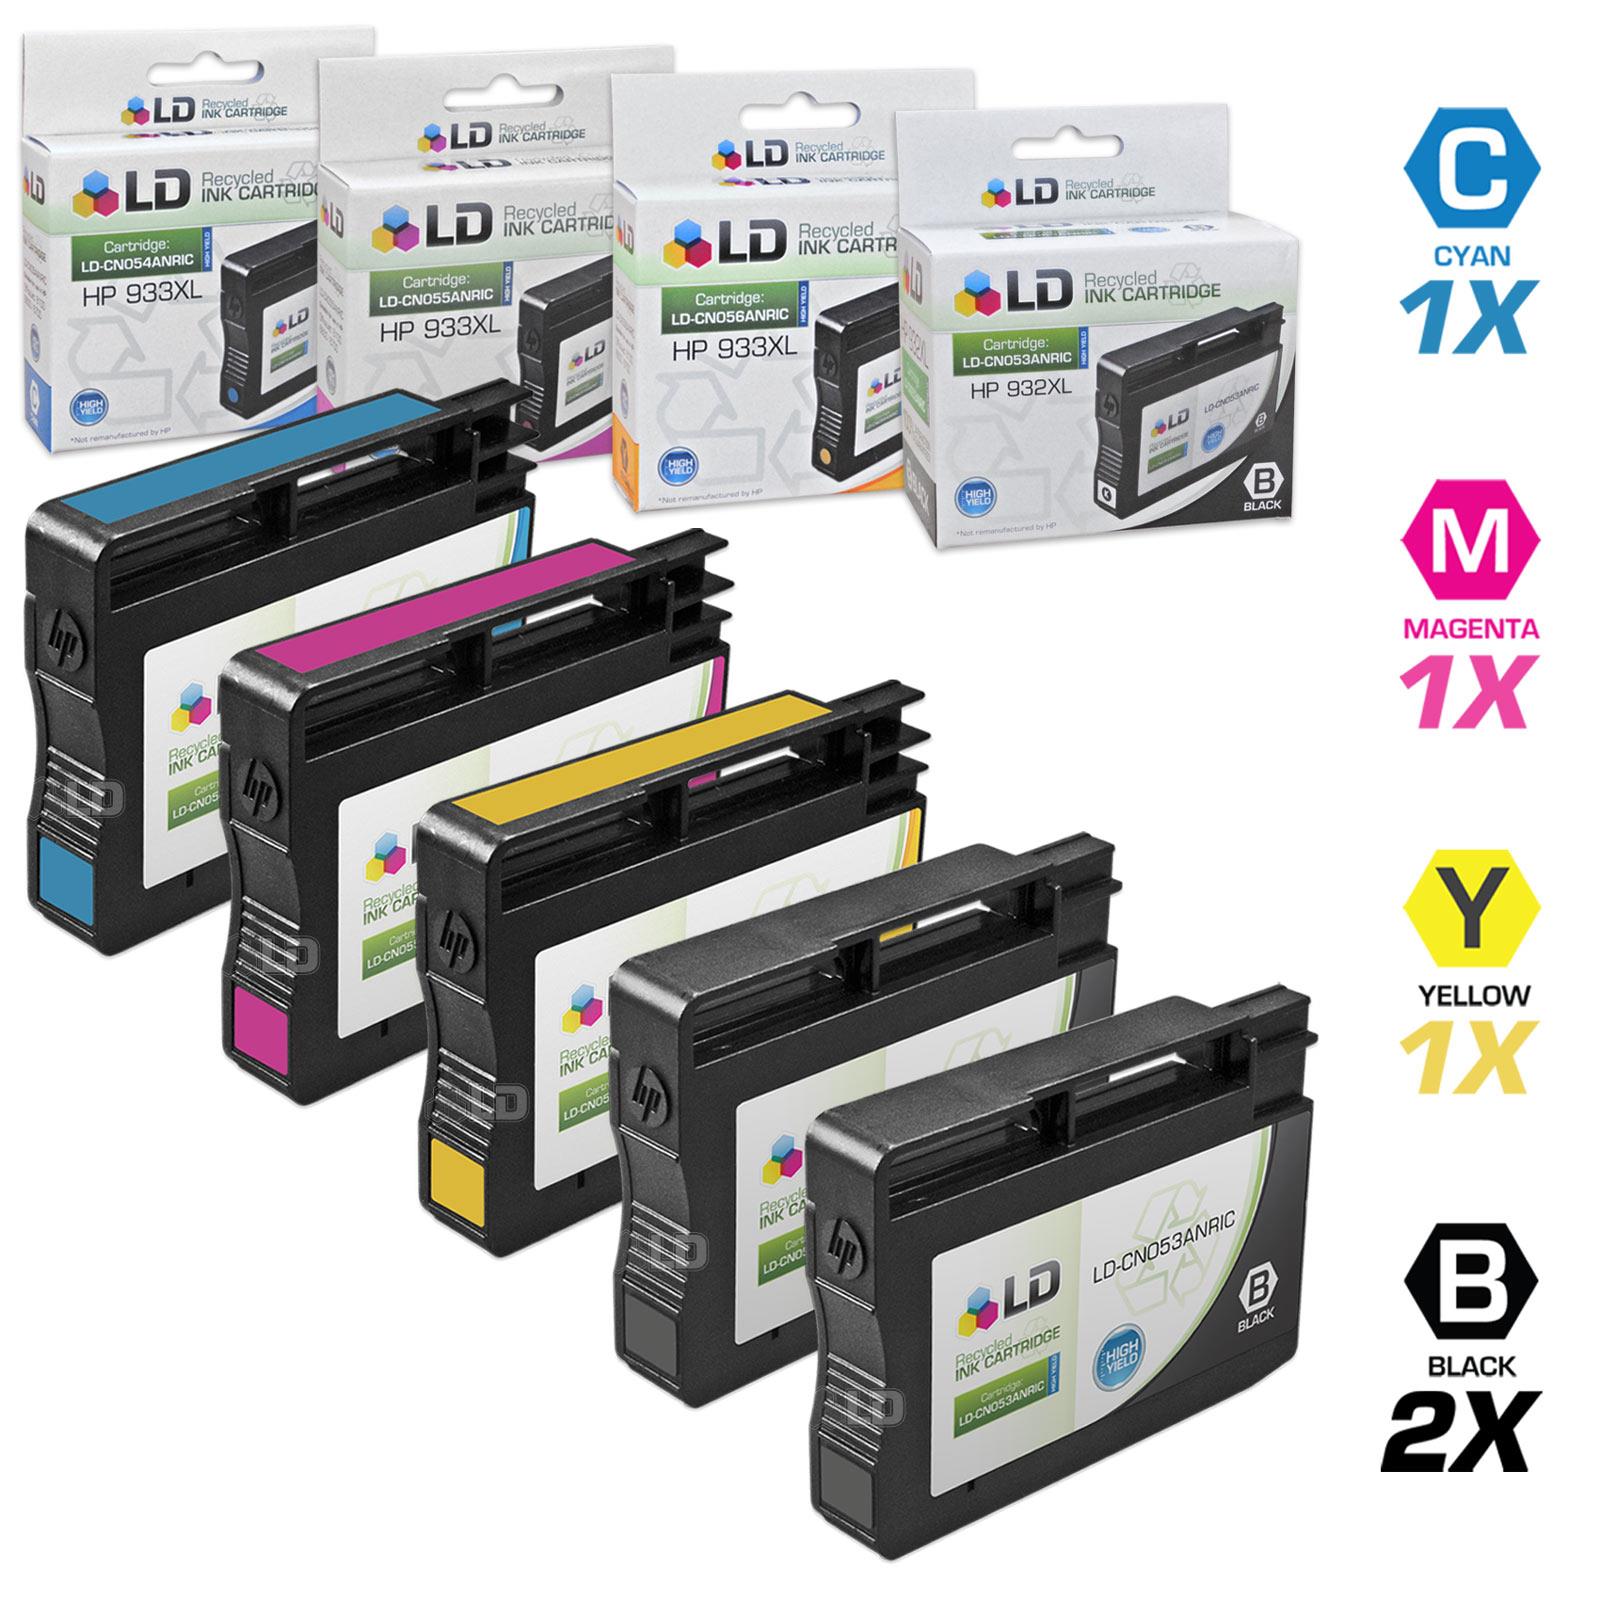 LD © Remanufactured Replacements for Hewlett Packard 932XL / 932 / HP 933XL  / 933 Set of 5 Inkjet Cartridges Includes: 2 CN053AN Black, 1 CN054AN Cyan, 1 CN055AN Magenta, and 1 CN056AN Yellow